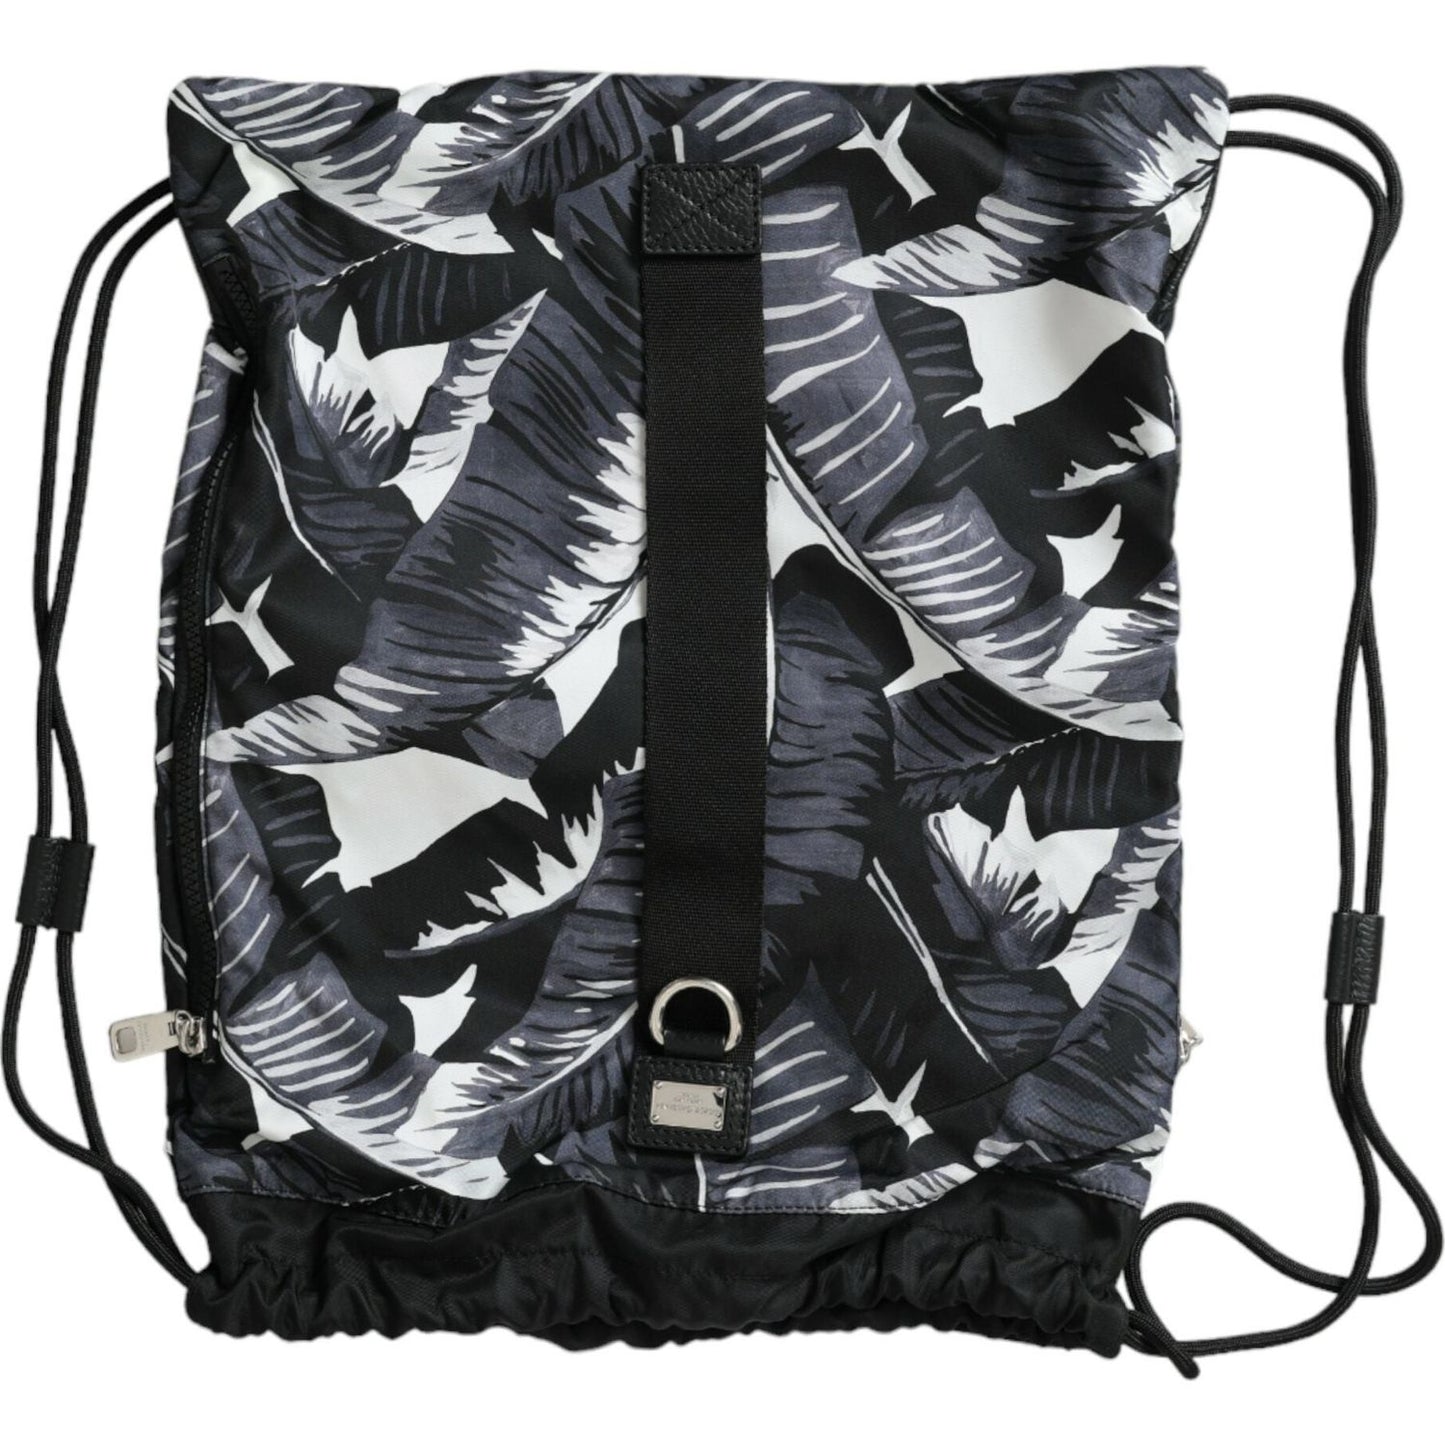 Dolce & Gabbana | Elegant Black Leaf Print Nap Sack Bag| McRichard Designer Brands   